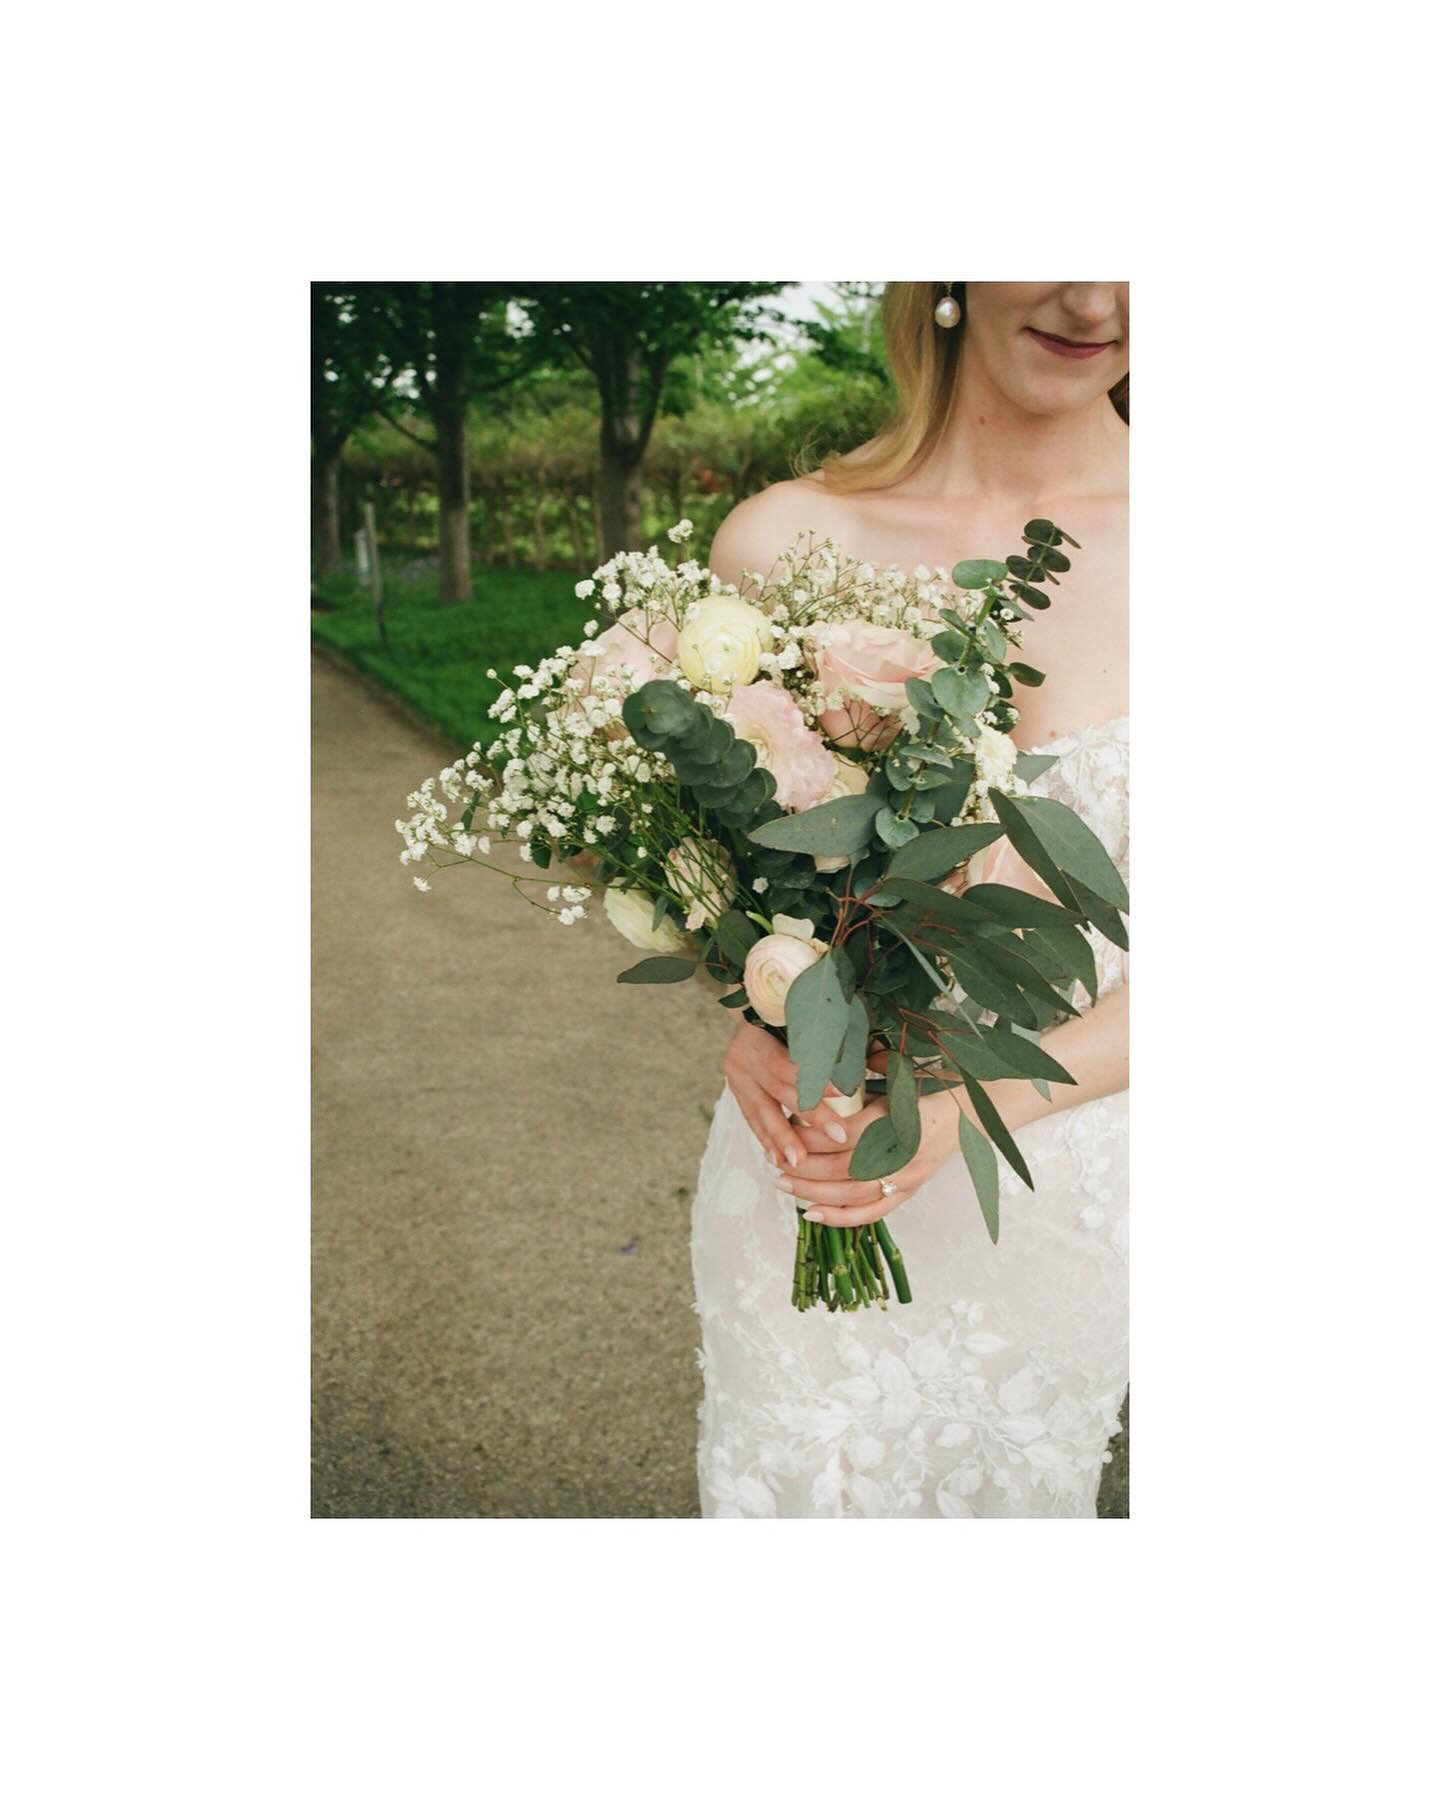 Florals appreciation post. The unsung heroes of the wedding day. 🥀

&bull;
&bull;
&bull;
#floral #floraldesign #weddinginspo #weddingphotography #weddingphotographer #weddingflowers #stlbride #bride